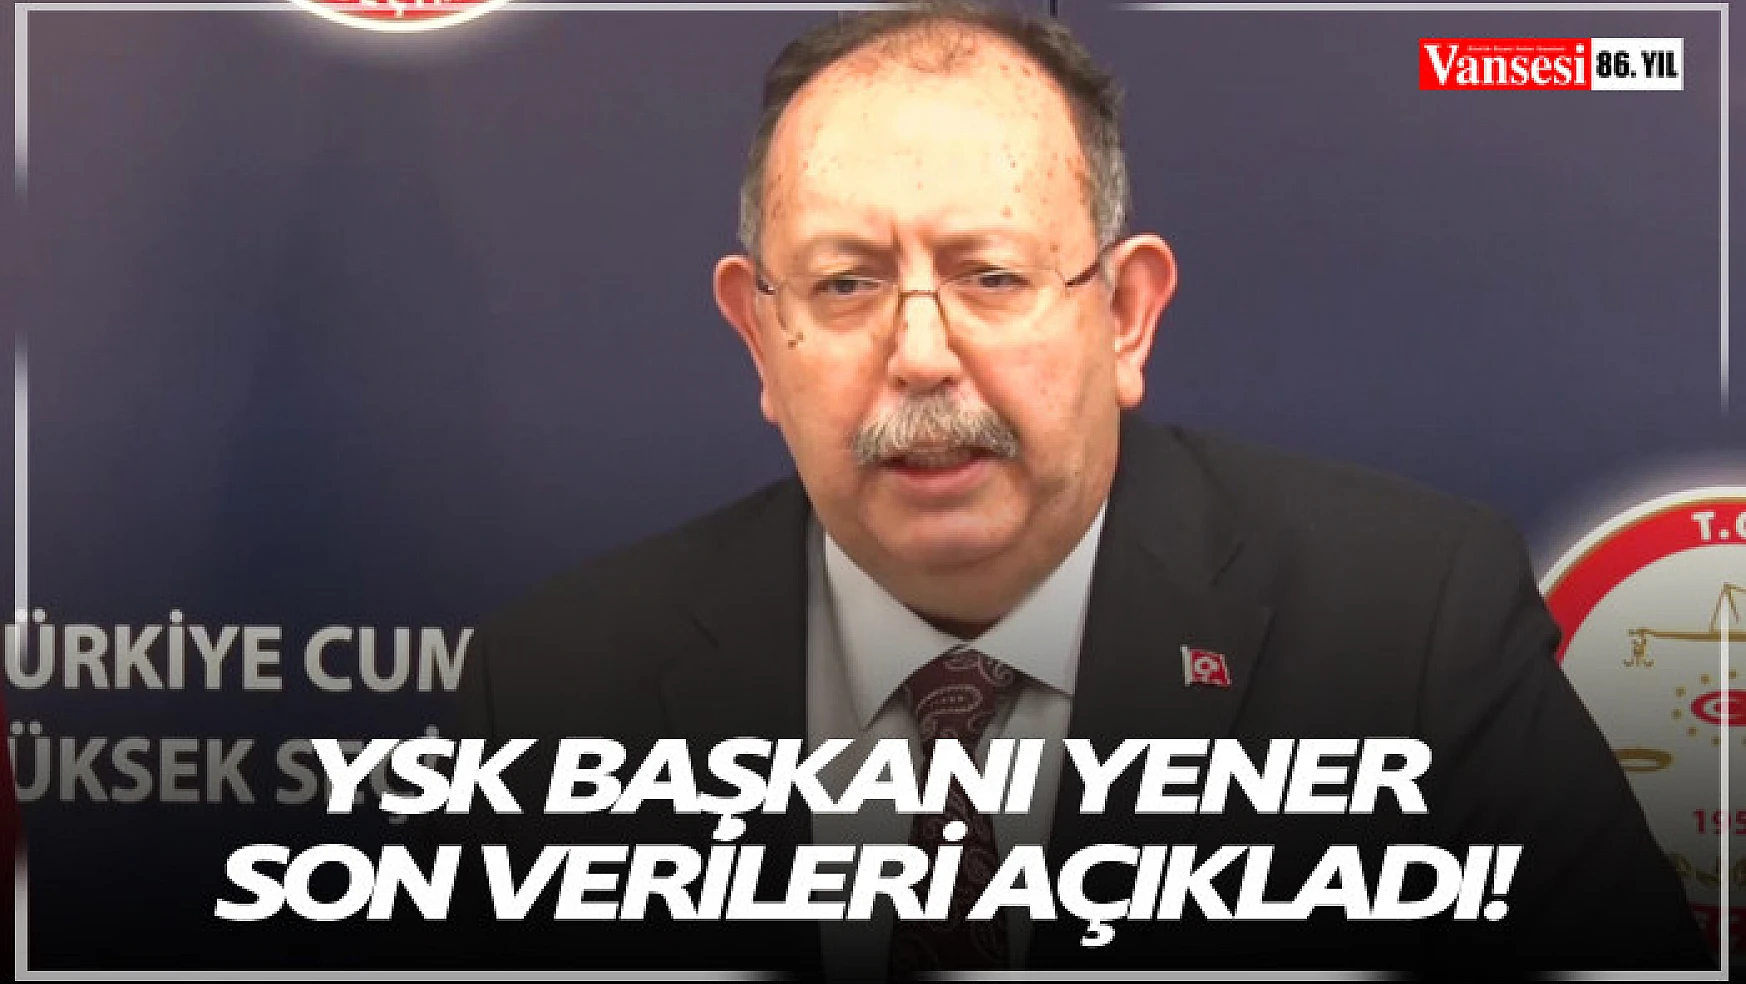 YSK Başkanı Yener son verileri açıkladı!